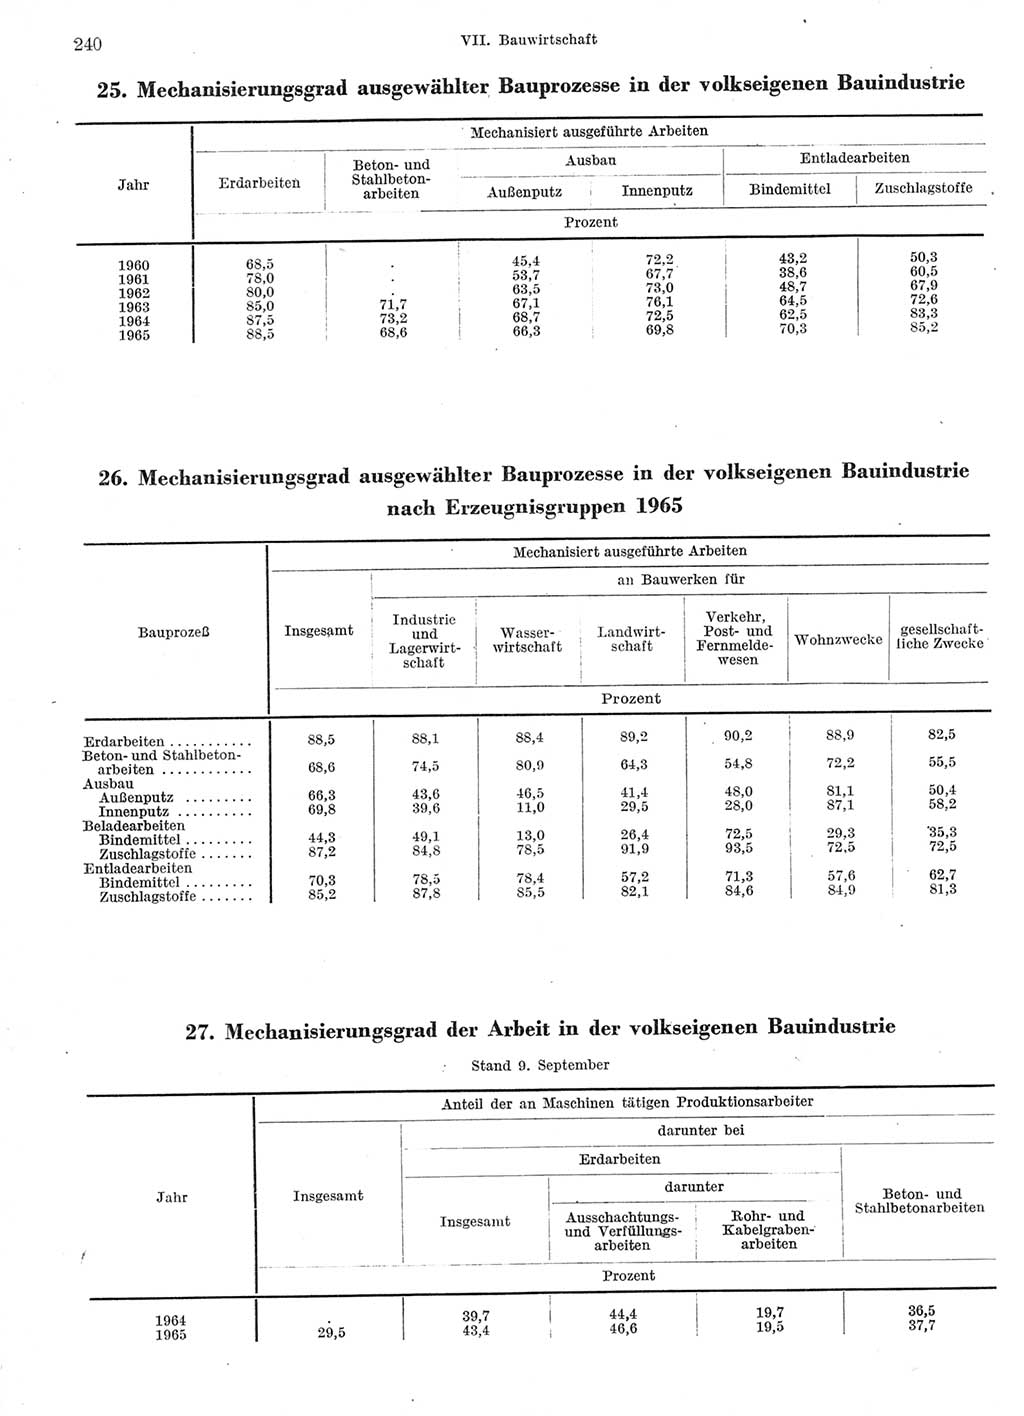 Statistisches Jahrbuch der Deutschen Demokratischen Republik (DDR) 1966, Seite 240 (Stat. Jb. DDR 1966, S. 240)